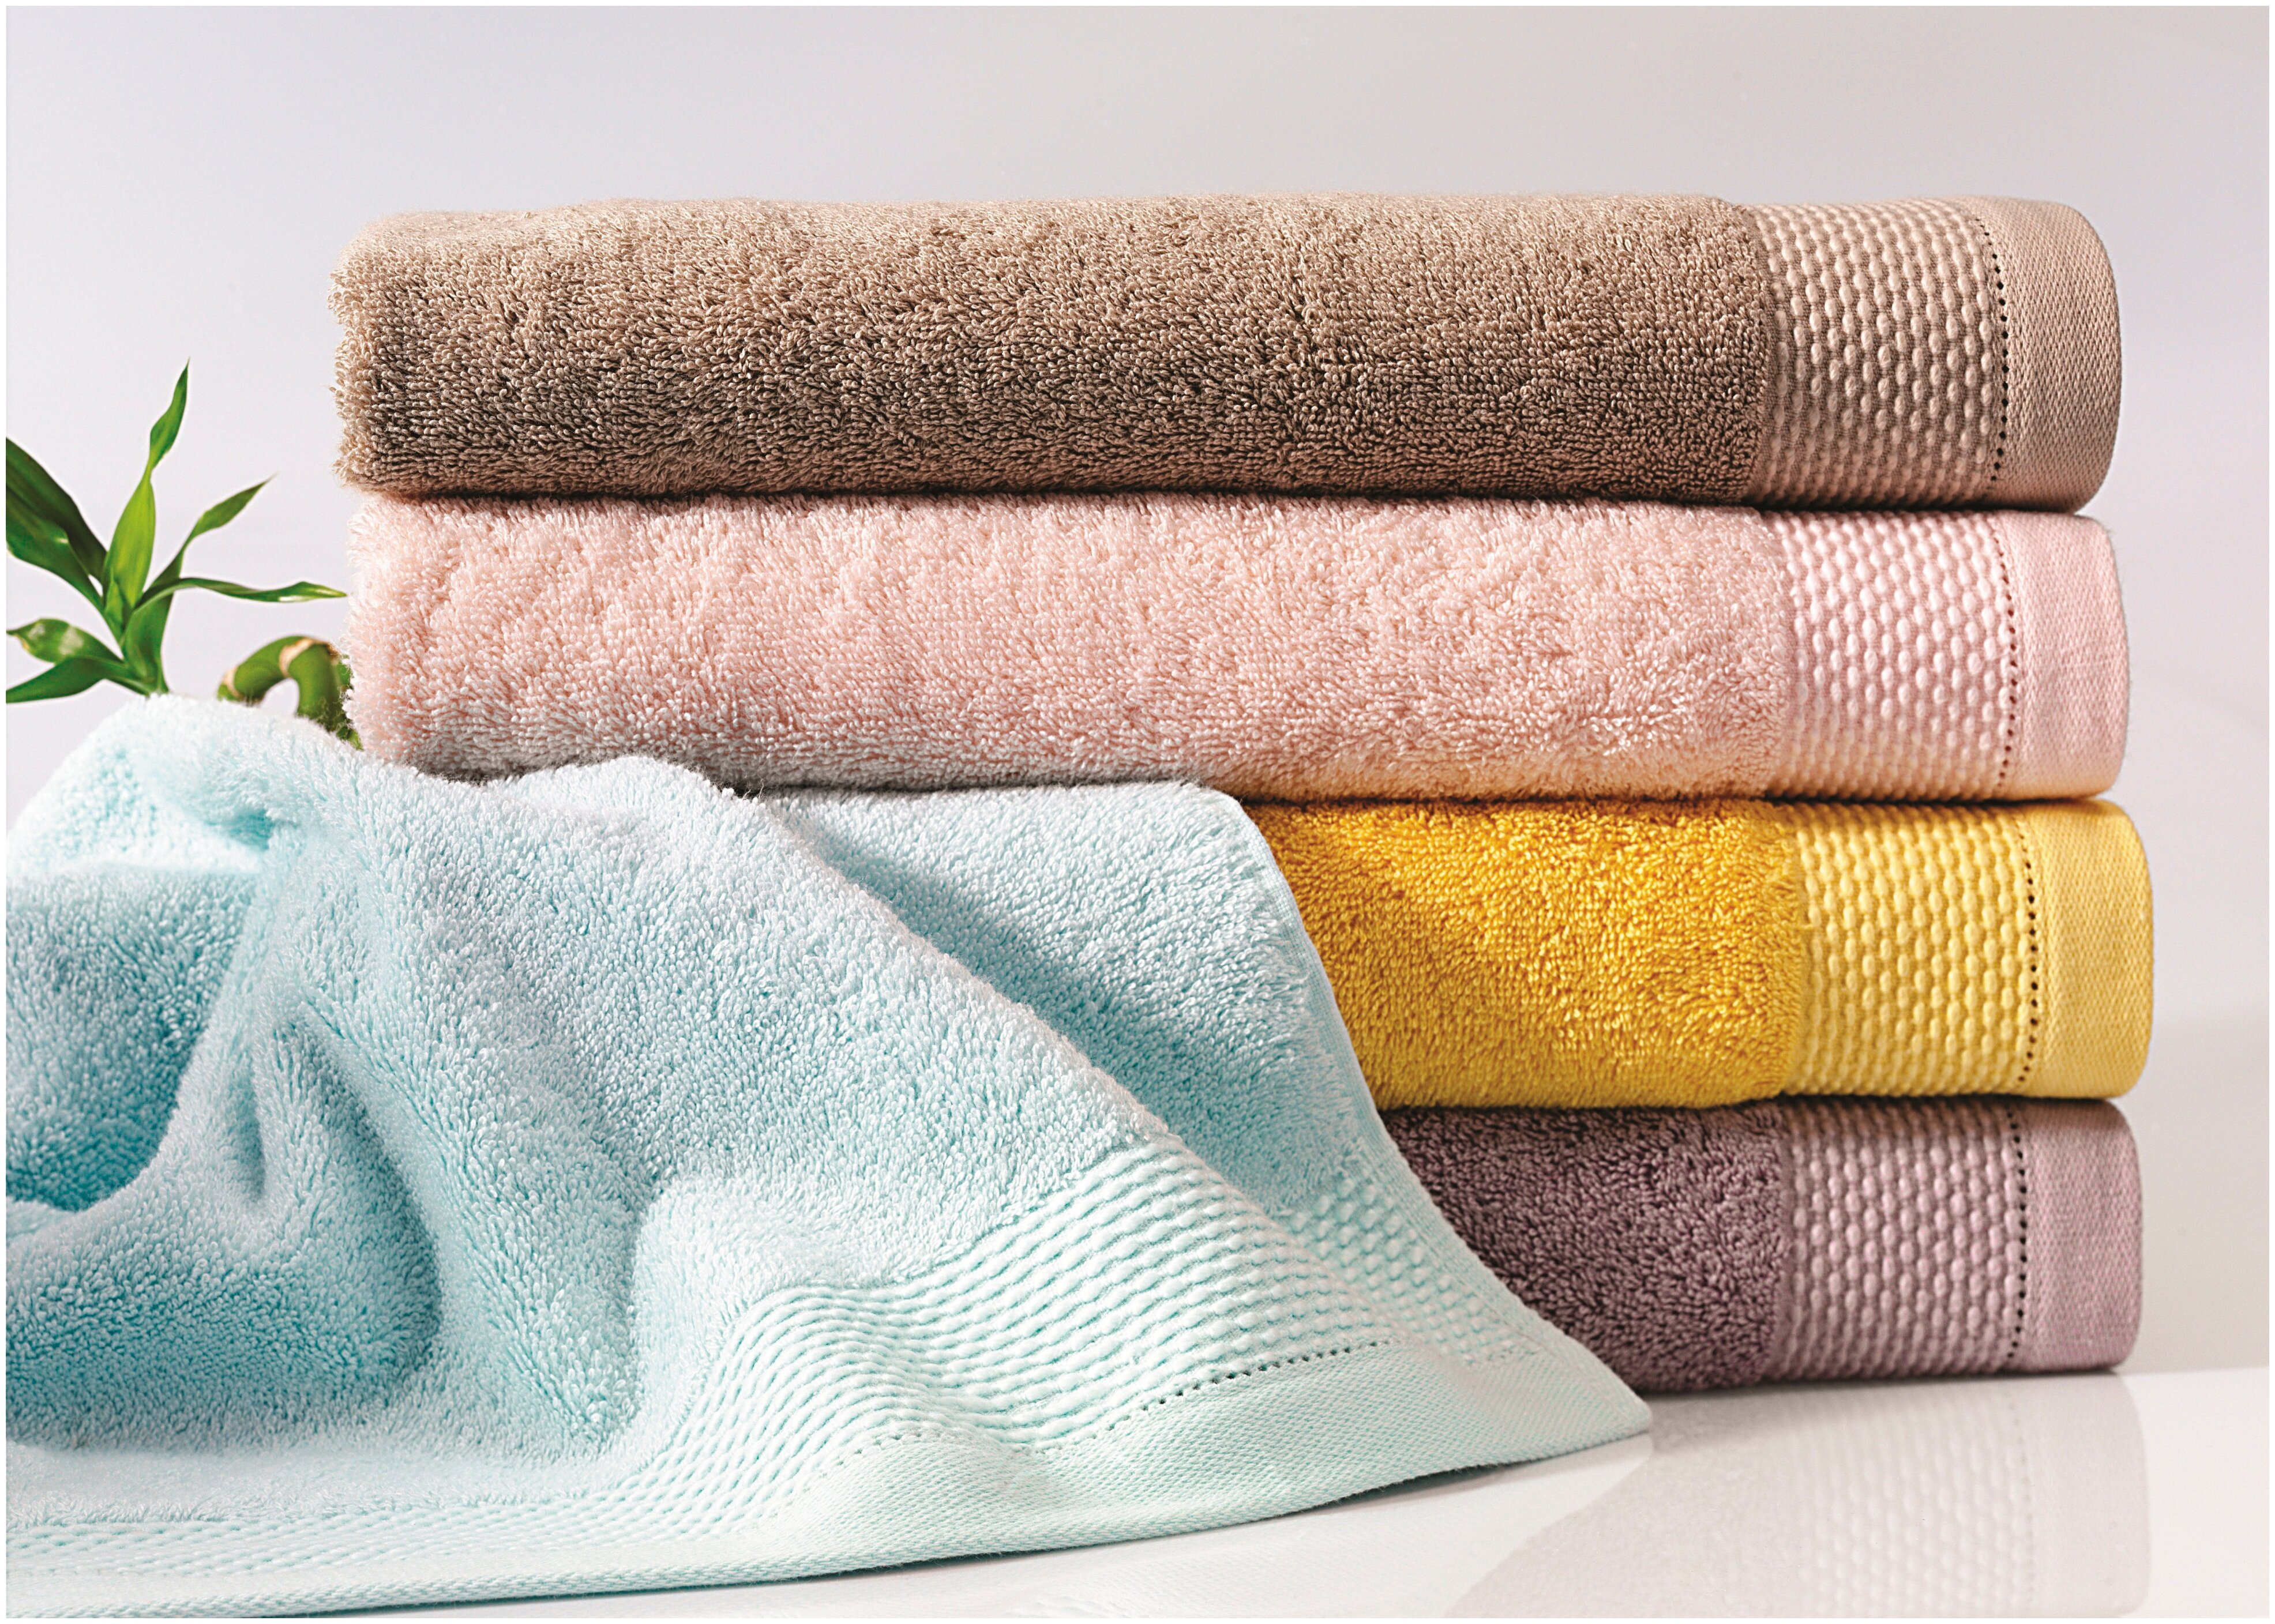 Полотенце на кровати. Soft Cotton Havlu. Стопка полотенец. Мягкие полотенца. Красивые полотенца.